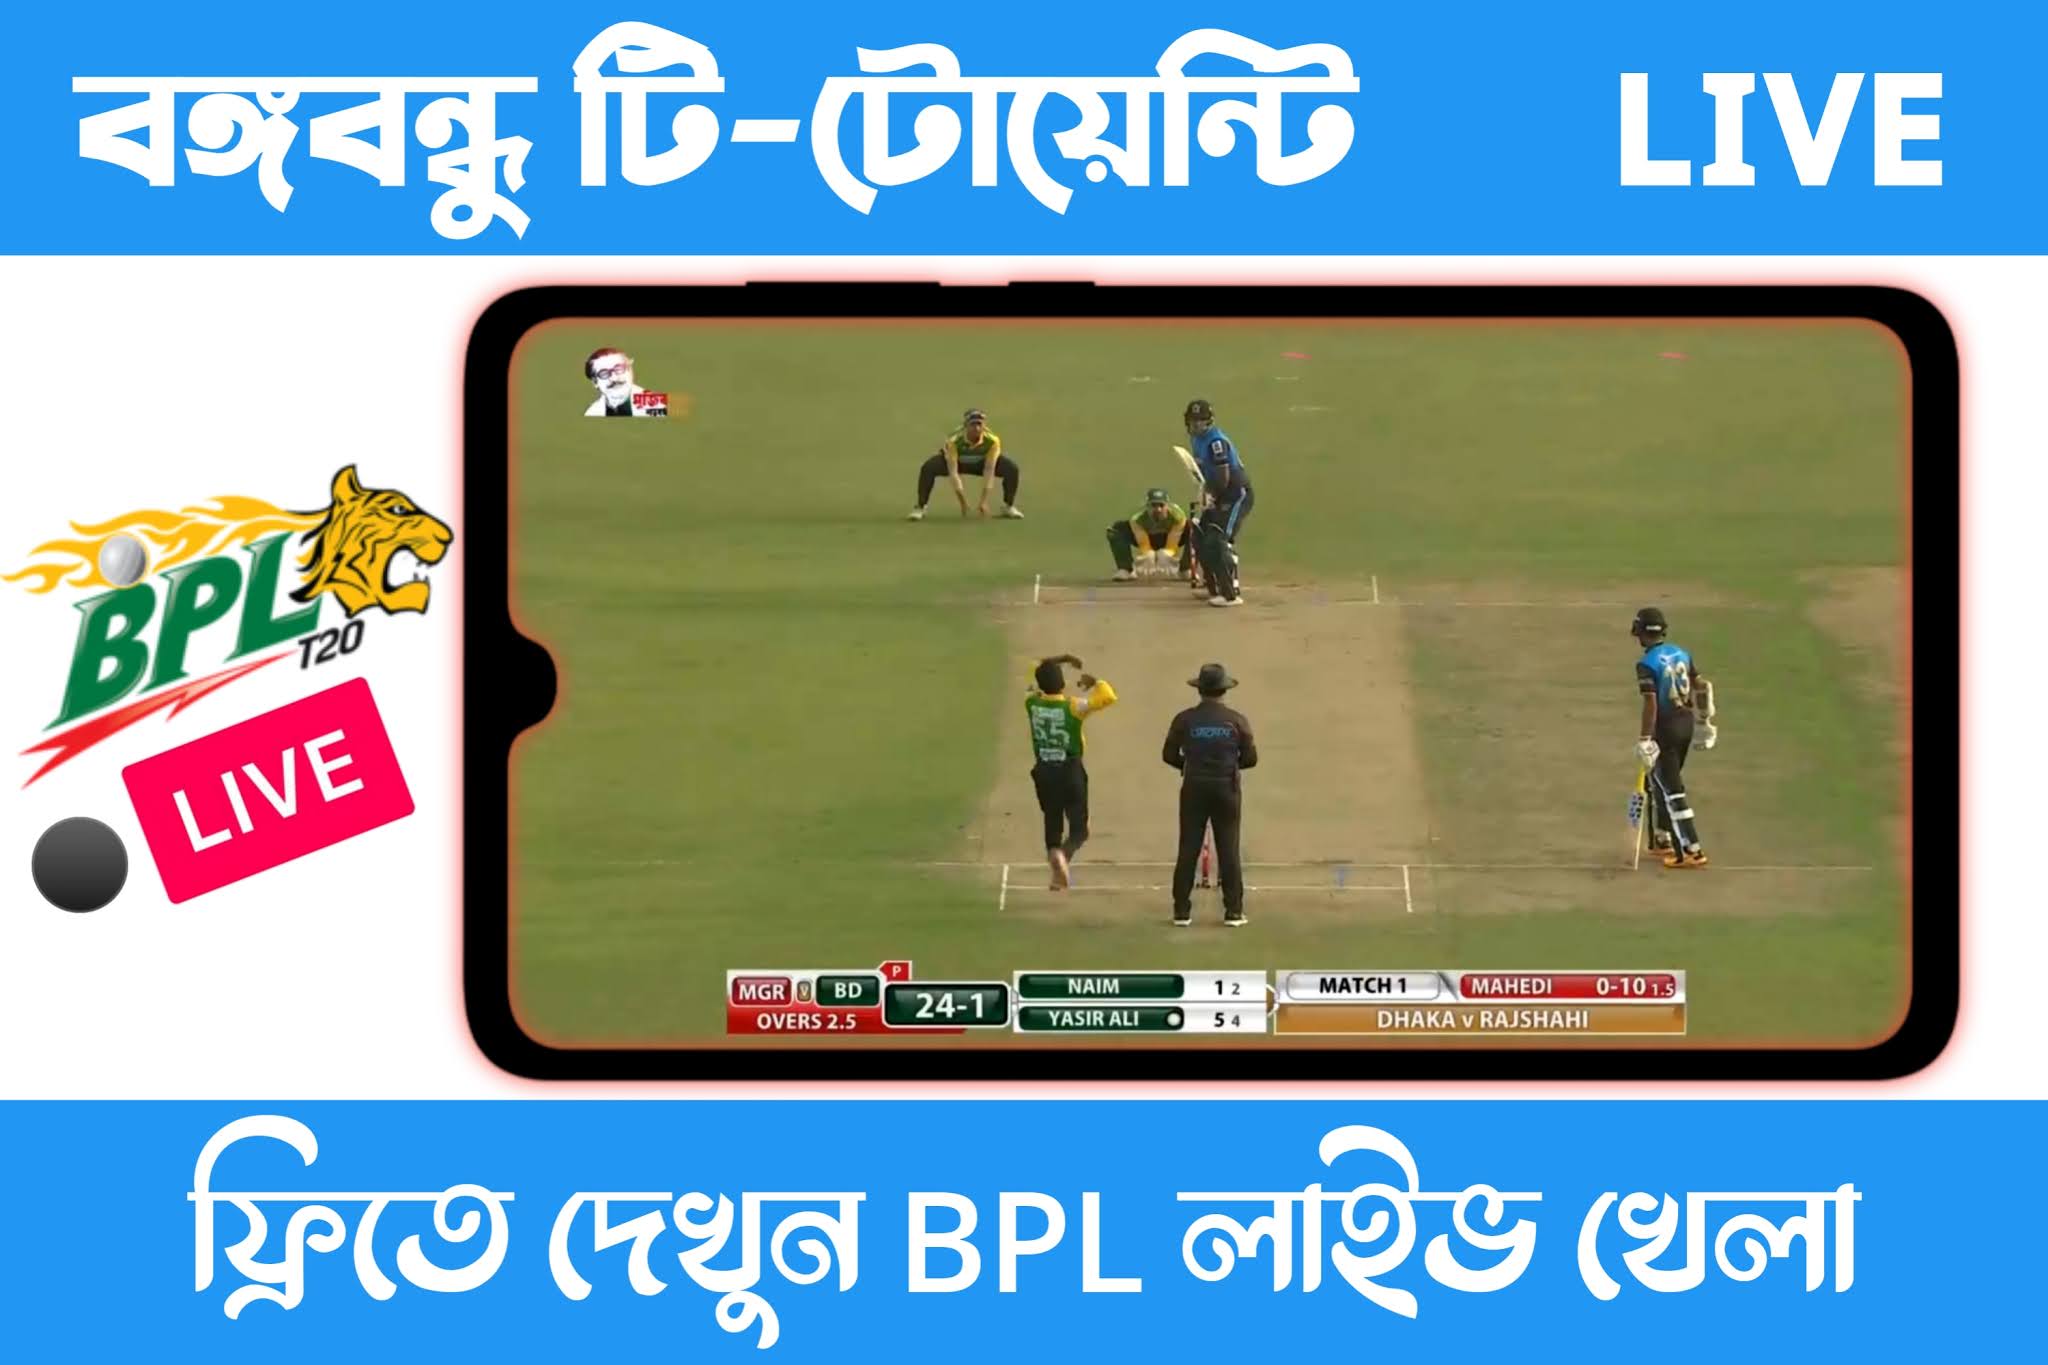 বঙ্গবন্ধু টি২০ খেলা লাইভ দেখুন ফ্রিতে - Bangabandhu T20 Live Apps 2020